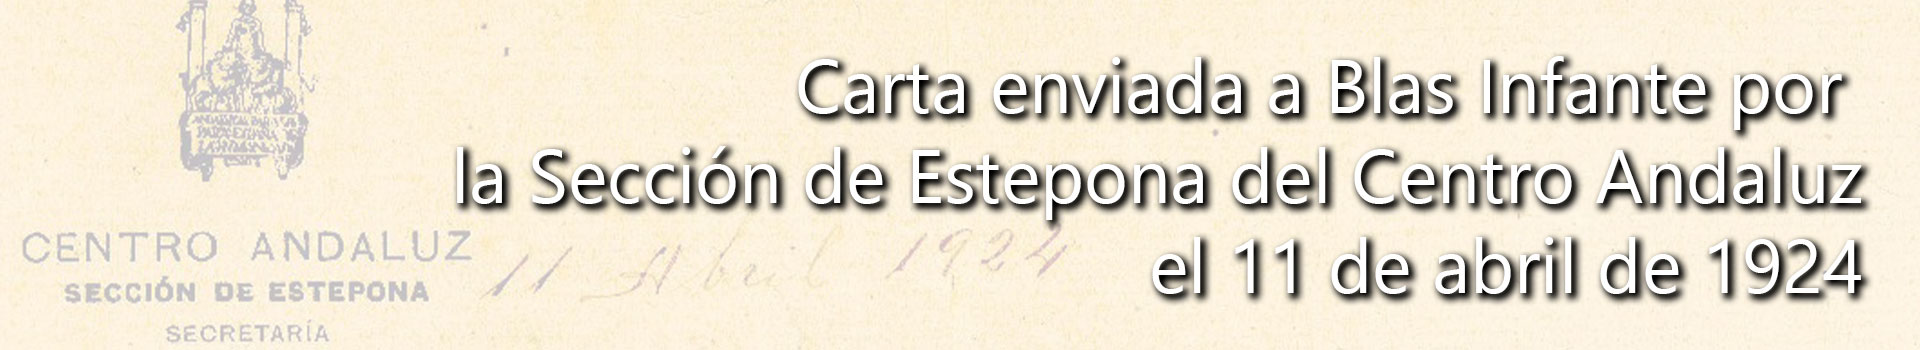 Carta enviada por la Sección de Estepona del Centro Andaluz